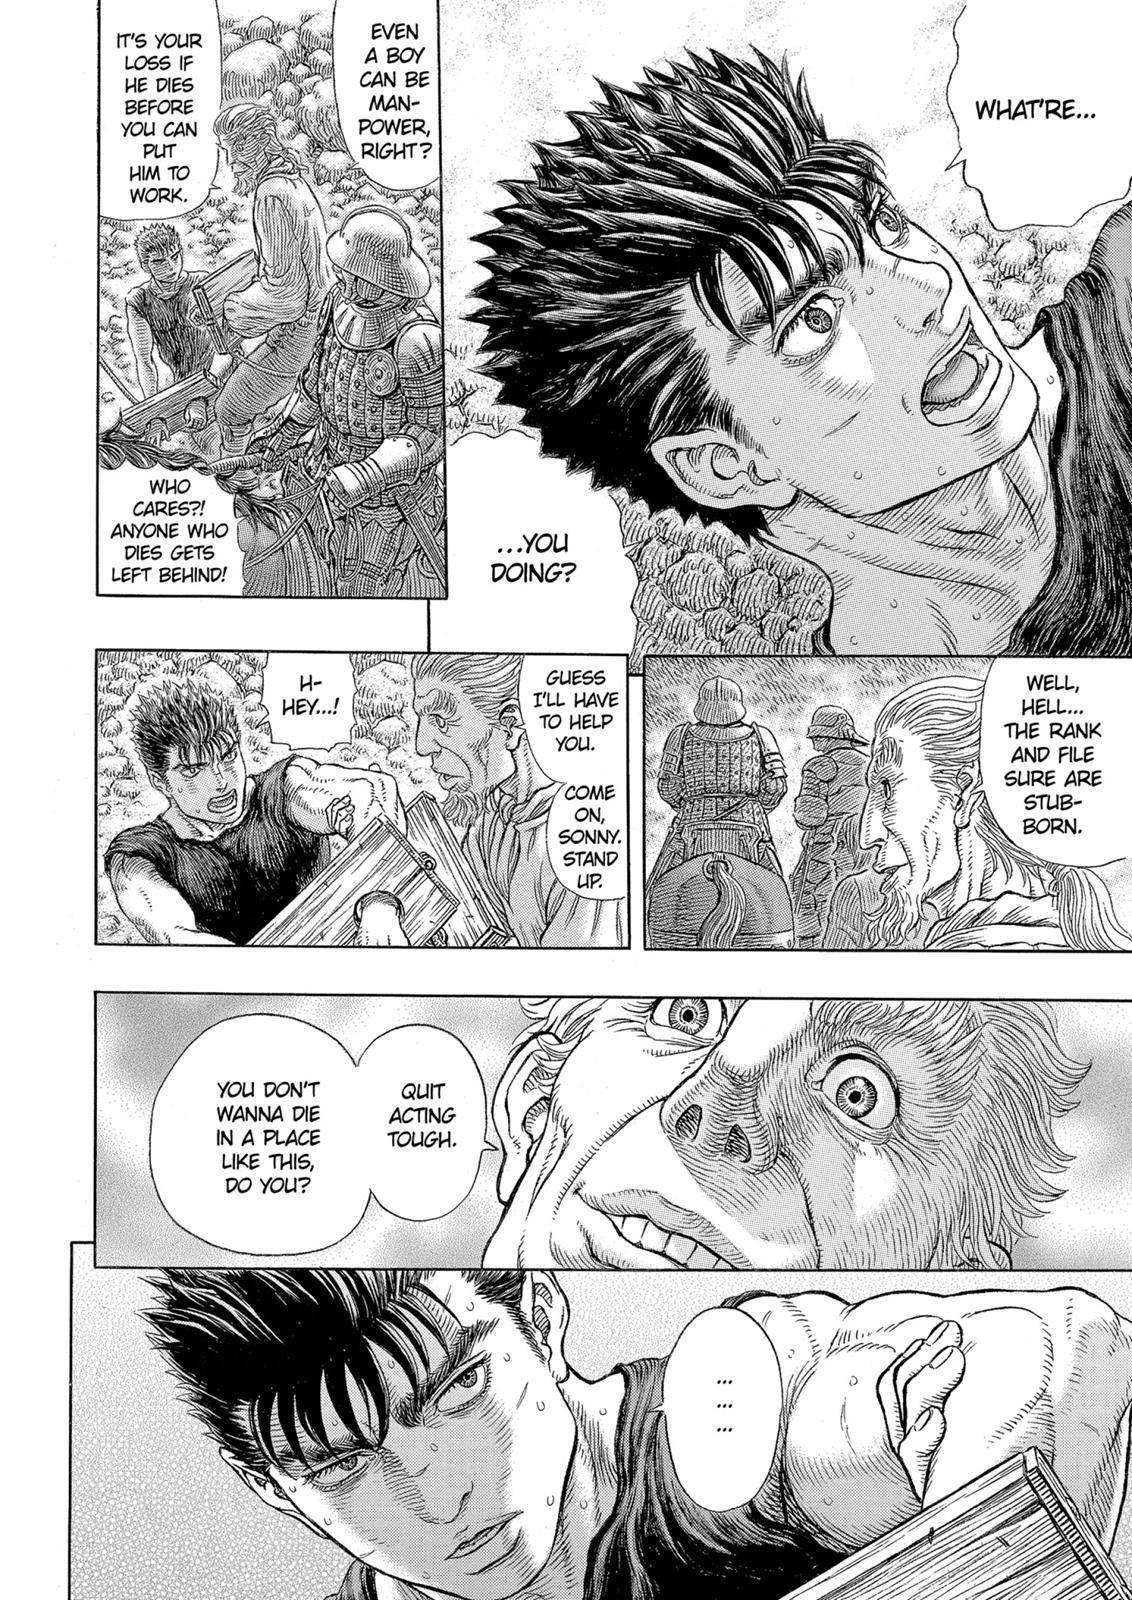 Berserk Manga Chapter 329 image 07